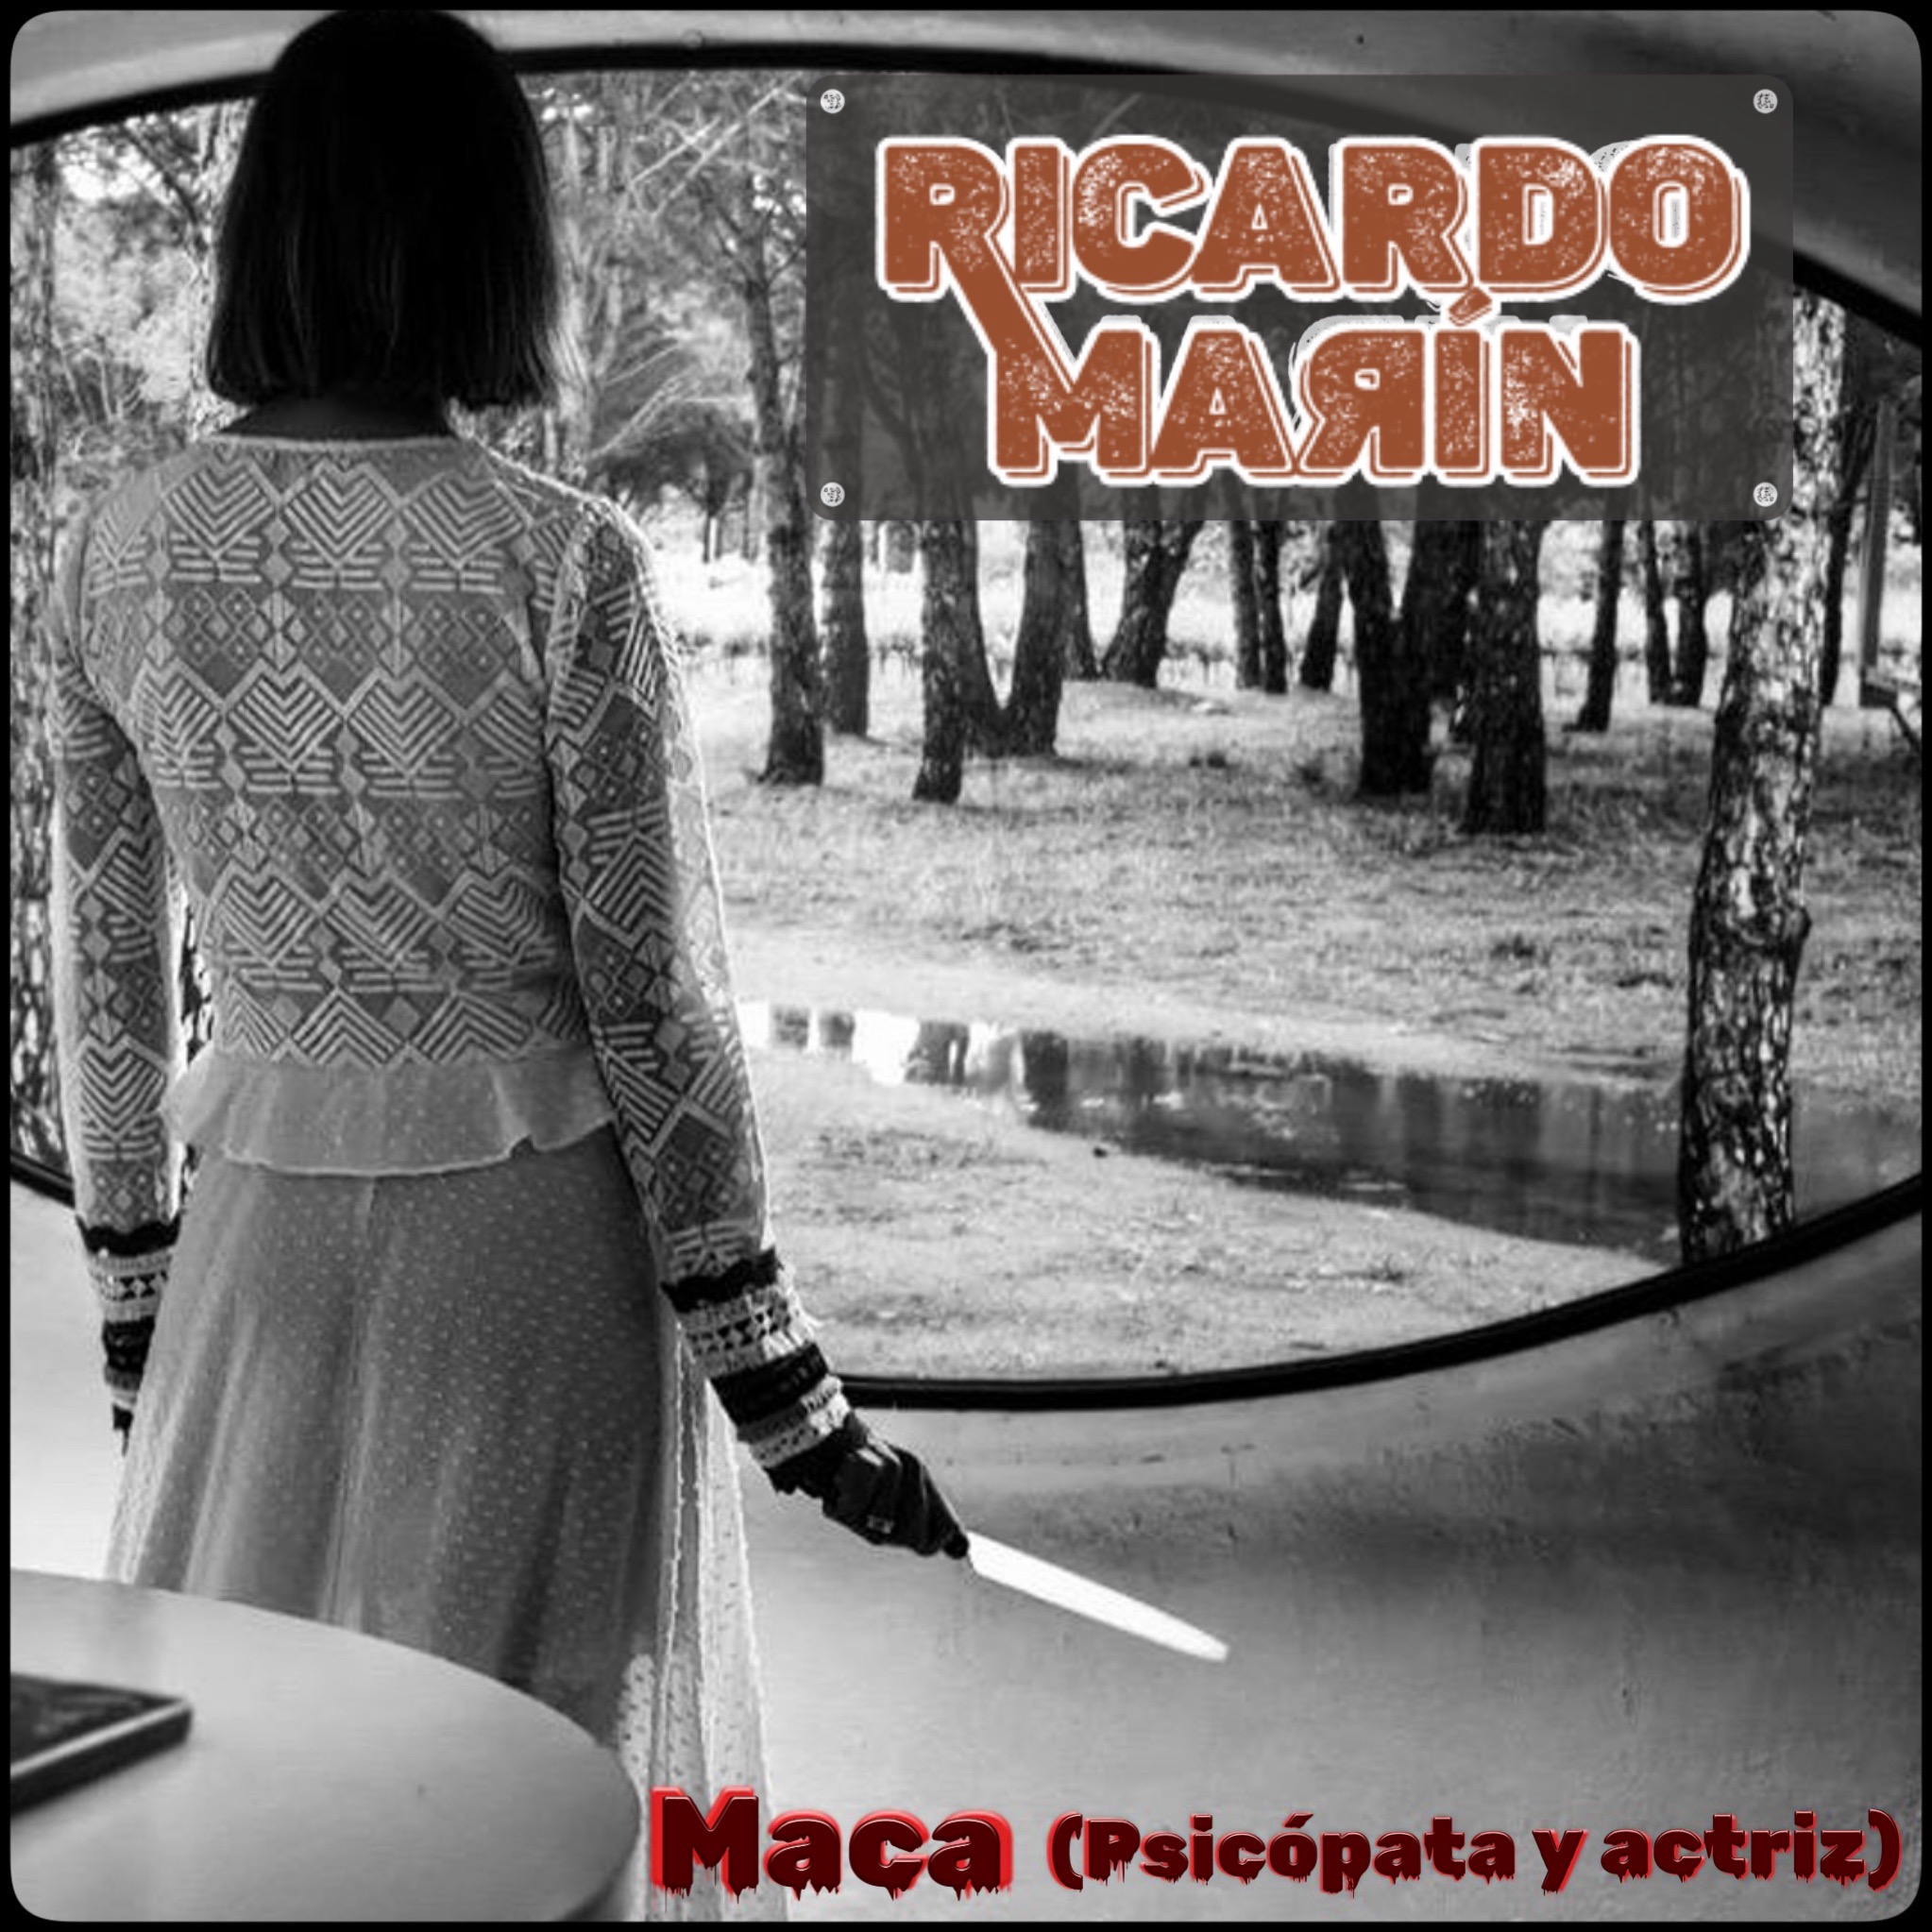 Así se llama el 4º single adelanto del nuevo disco de Ricardo Marín.